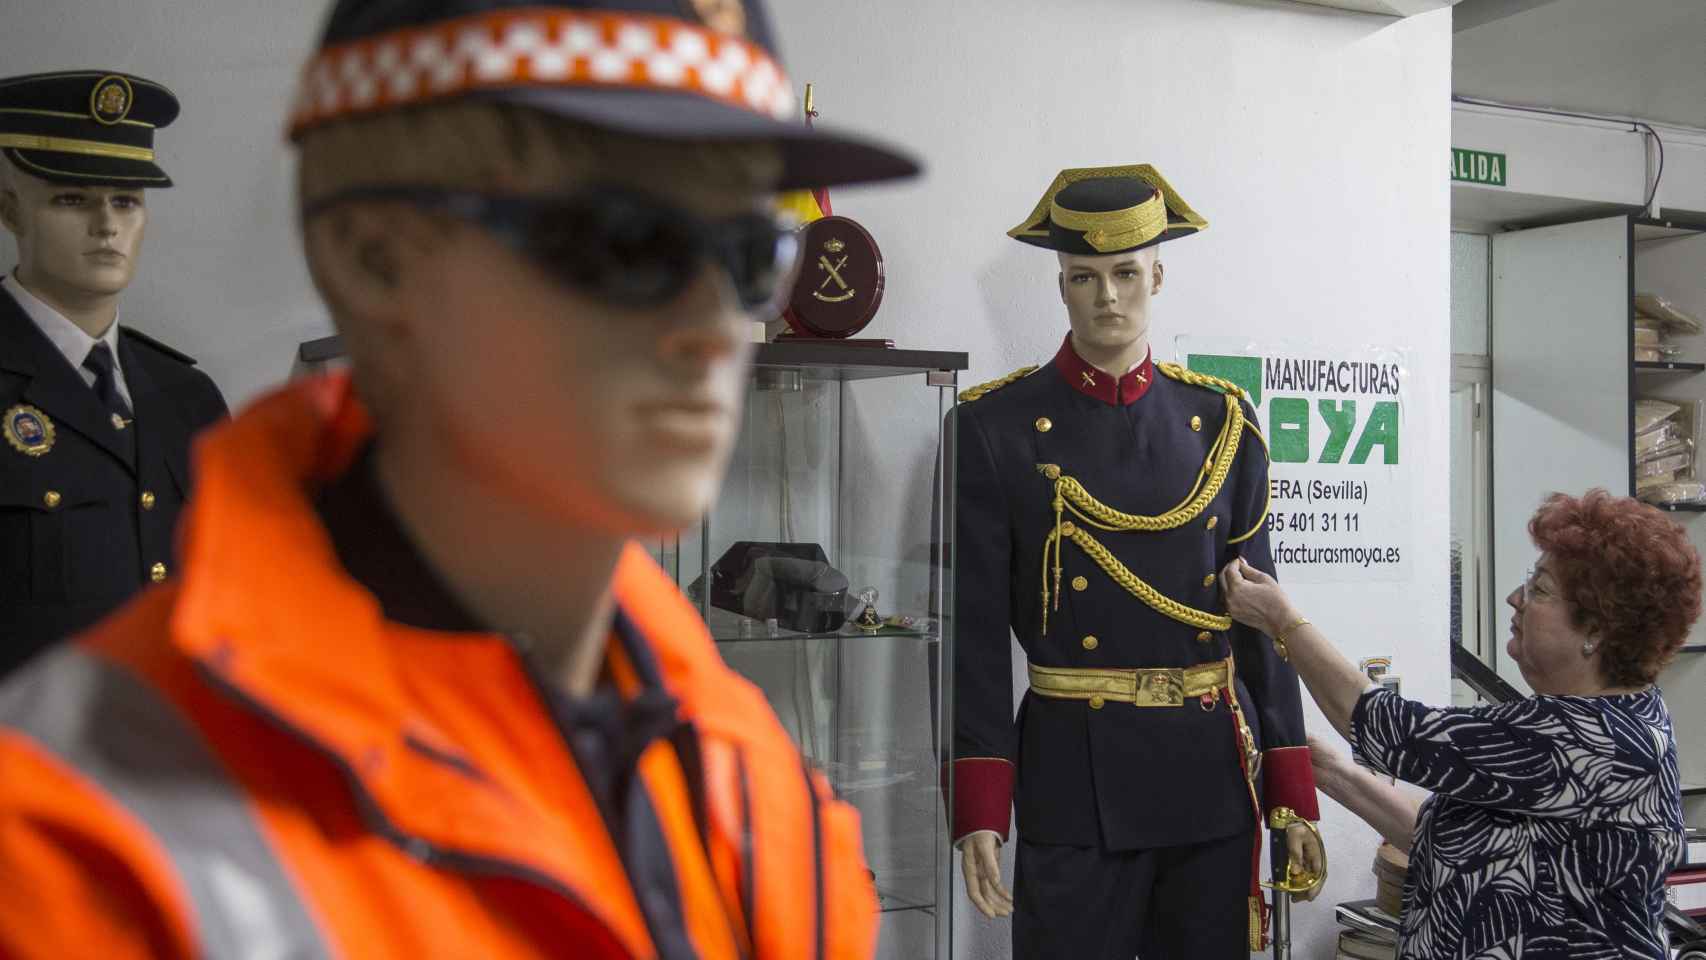 Manufacturas Moya, en Herrera (Sevilla) confecciona a mano uniformes para todos los cuerpos de seguridad del estado.